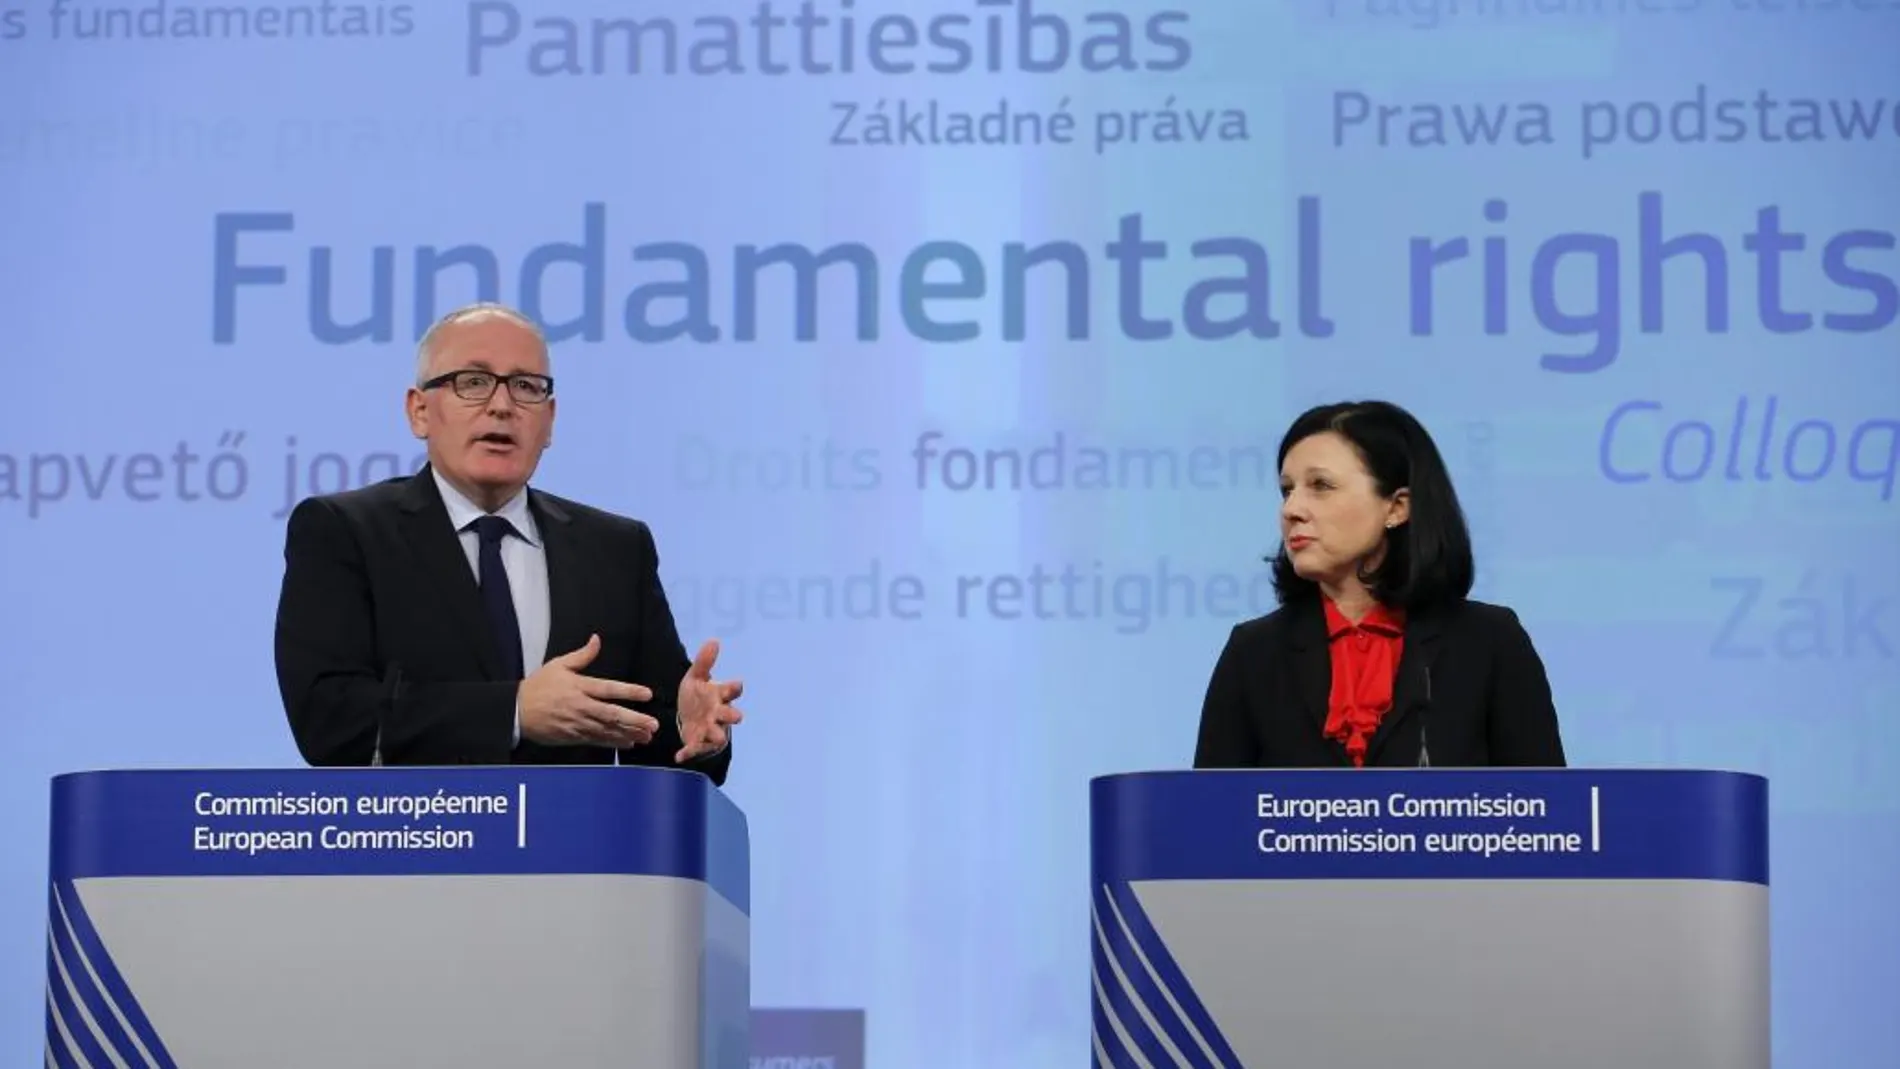 El vicepresidente de la Comisión Europea, Frans Timmermans, y la comisaria europea de Justicia, Vera Jourová (dcha), ofrecen una rueda de prensa sobre el primer coloquio anuial sobre derechos fundamentales en la Comisión Europea en Bruselas el 1 de octubre de 2015.